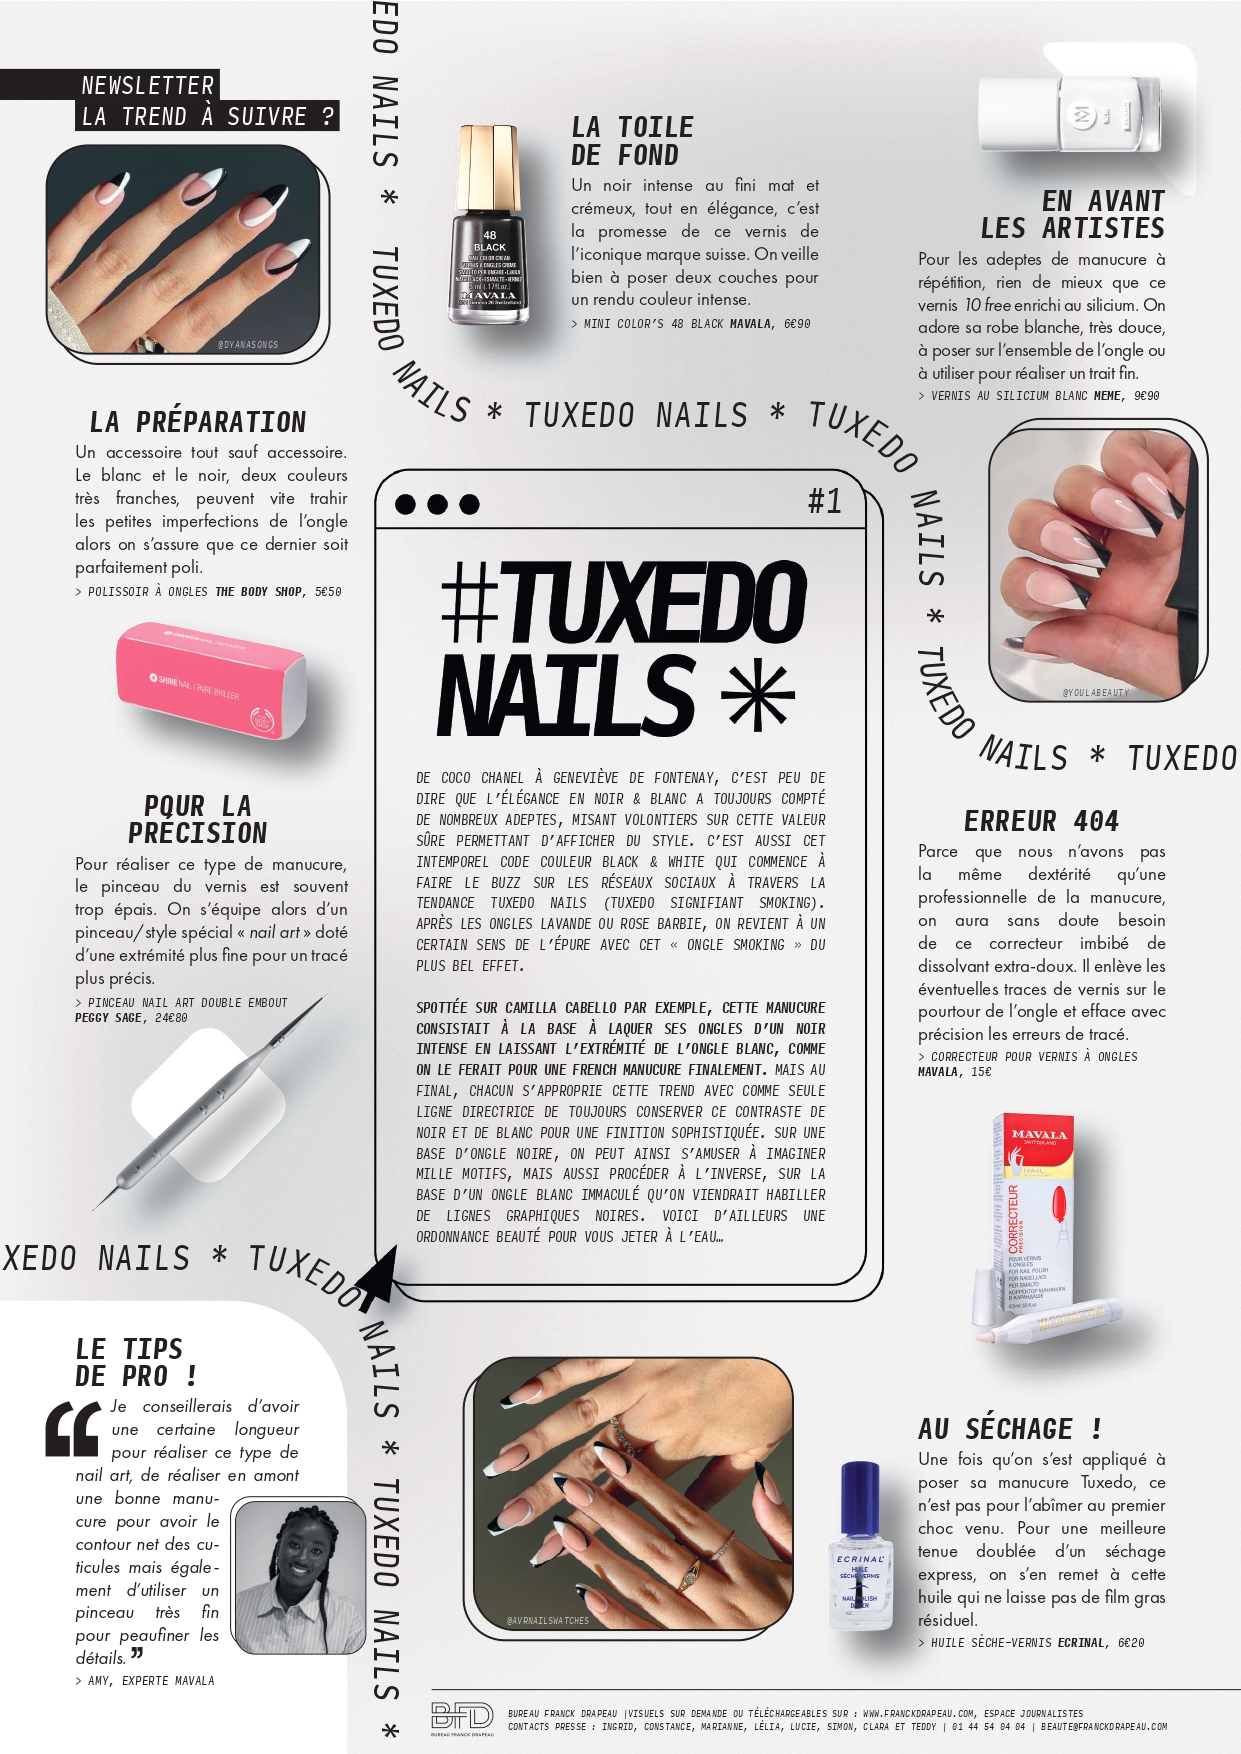 Newsletter | Tuxedo Nails